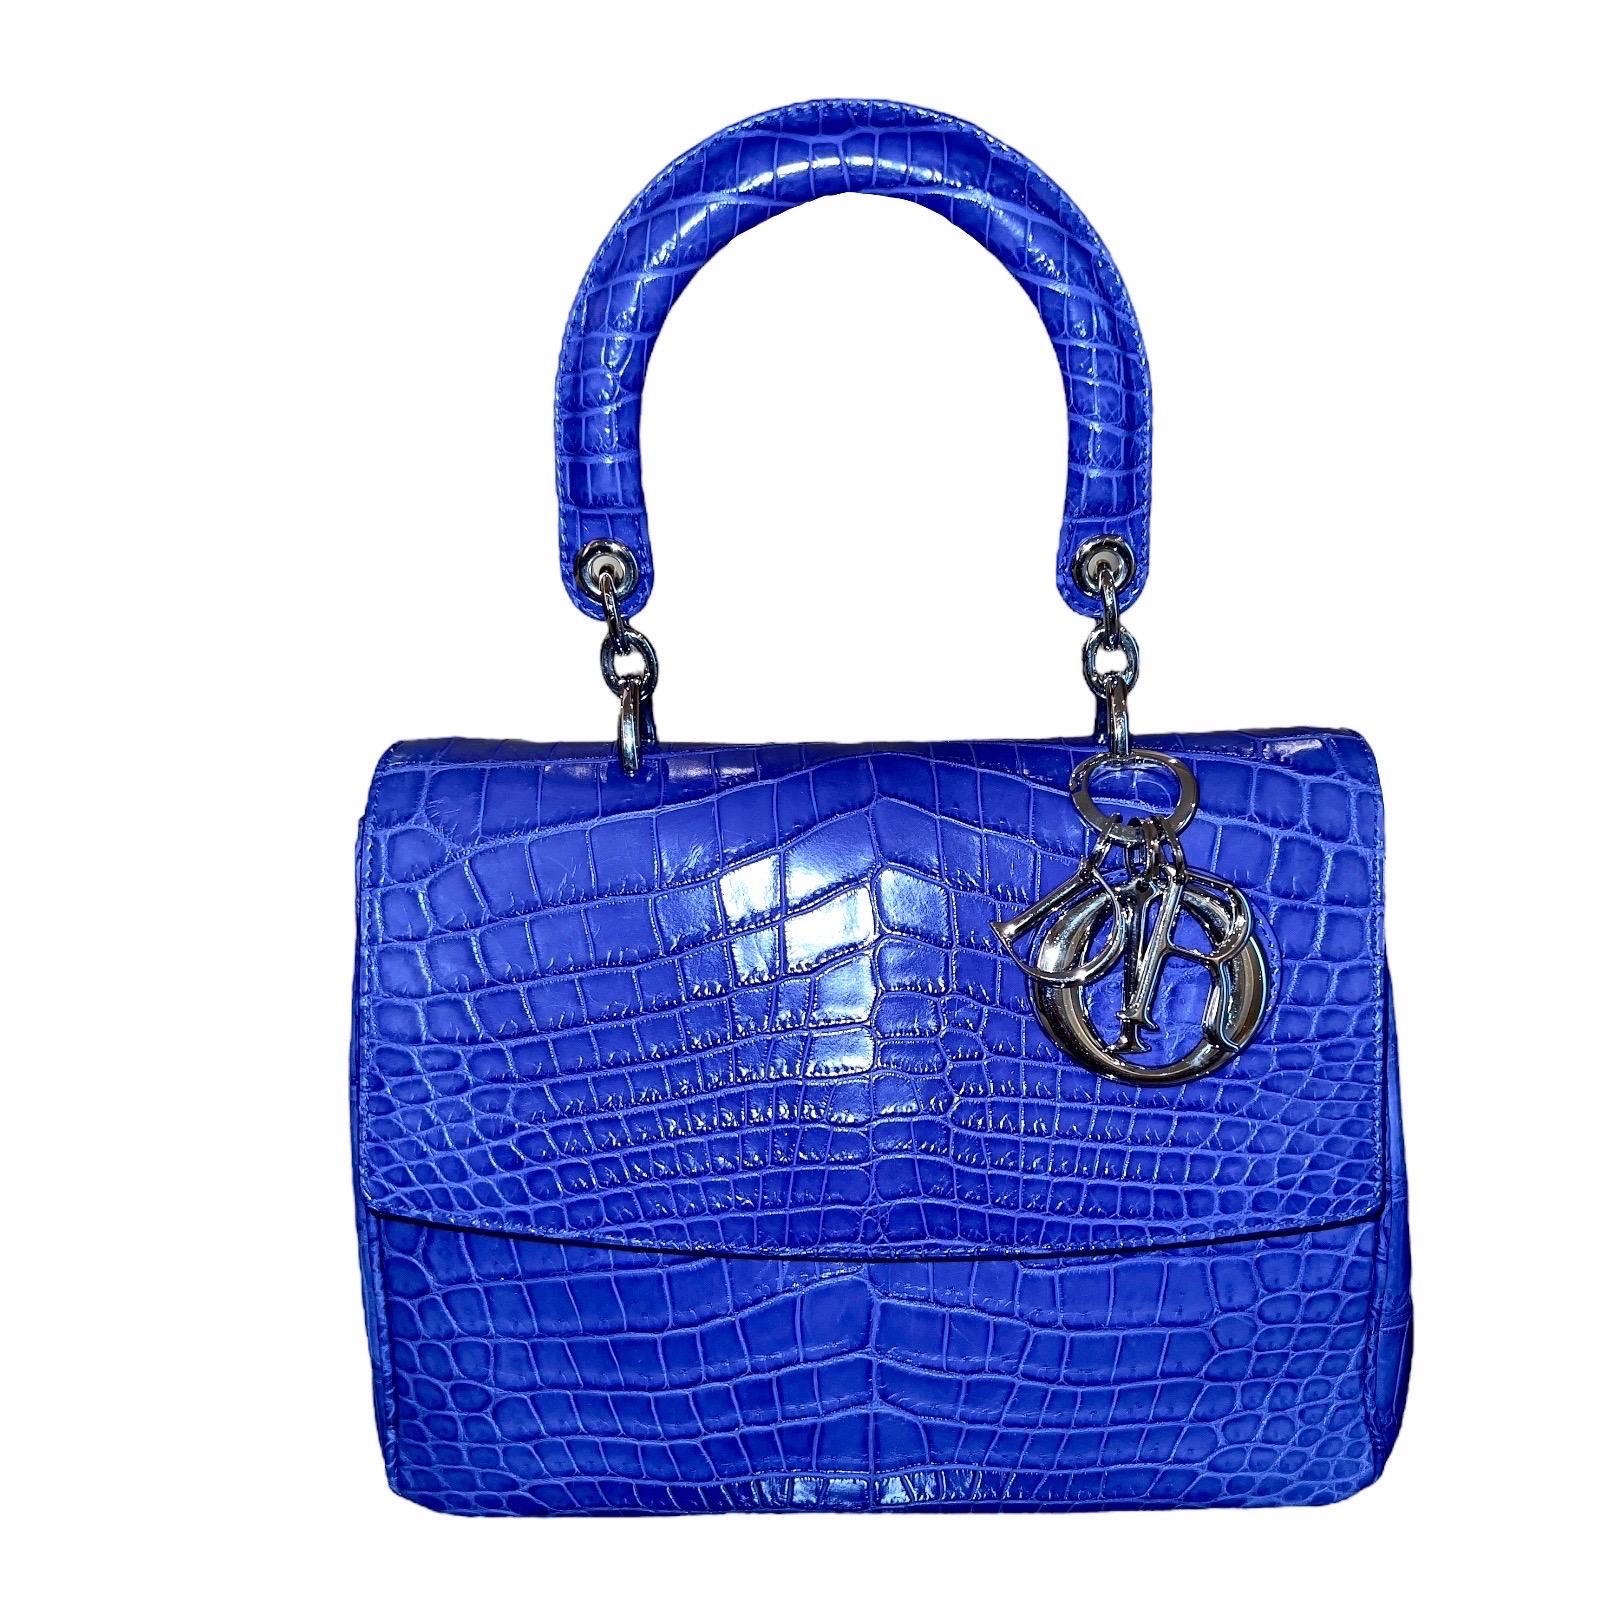 Absolument rare Christian Dior Lady Bag
Édition limitée
Fantastique couleur bleue
Peaux exotiques
Grand modèle
Bandoulière amovible
Accessoires de couleur blanche et dorée
Entièrement doublé de cuir nappa
Porté à la main, en bandoulière ou dans un